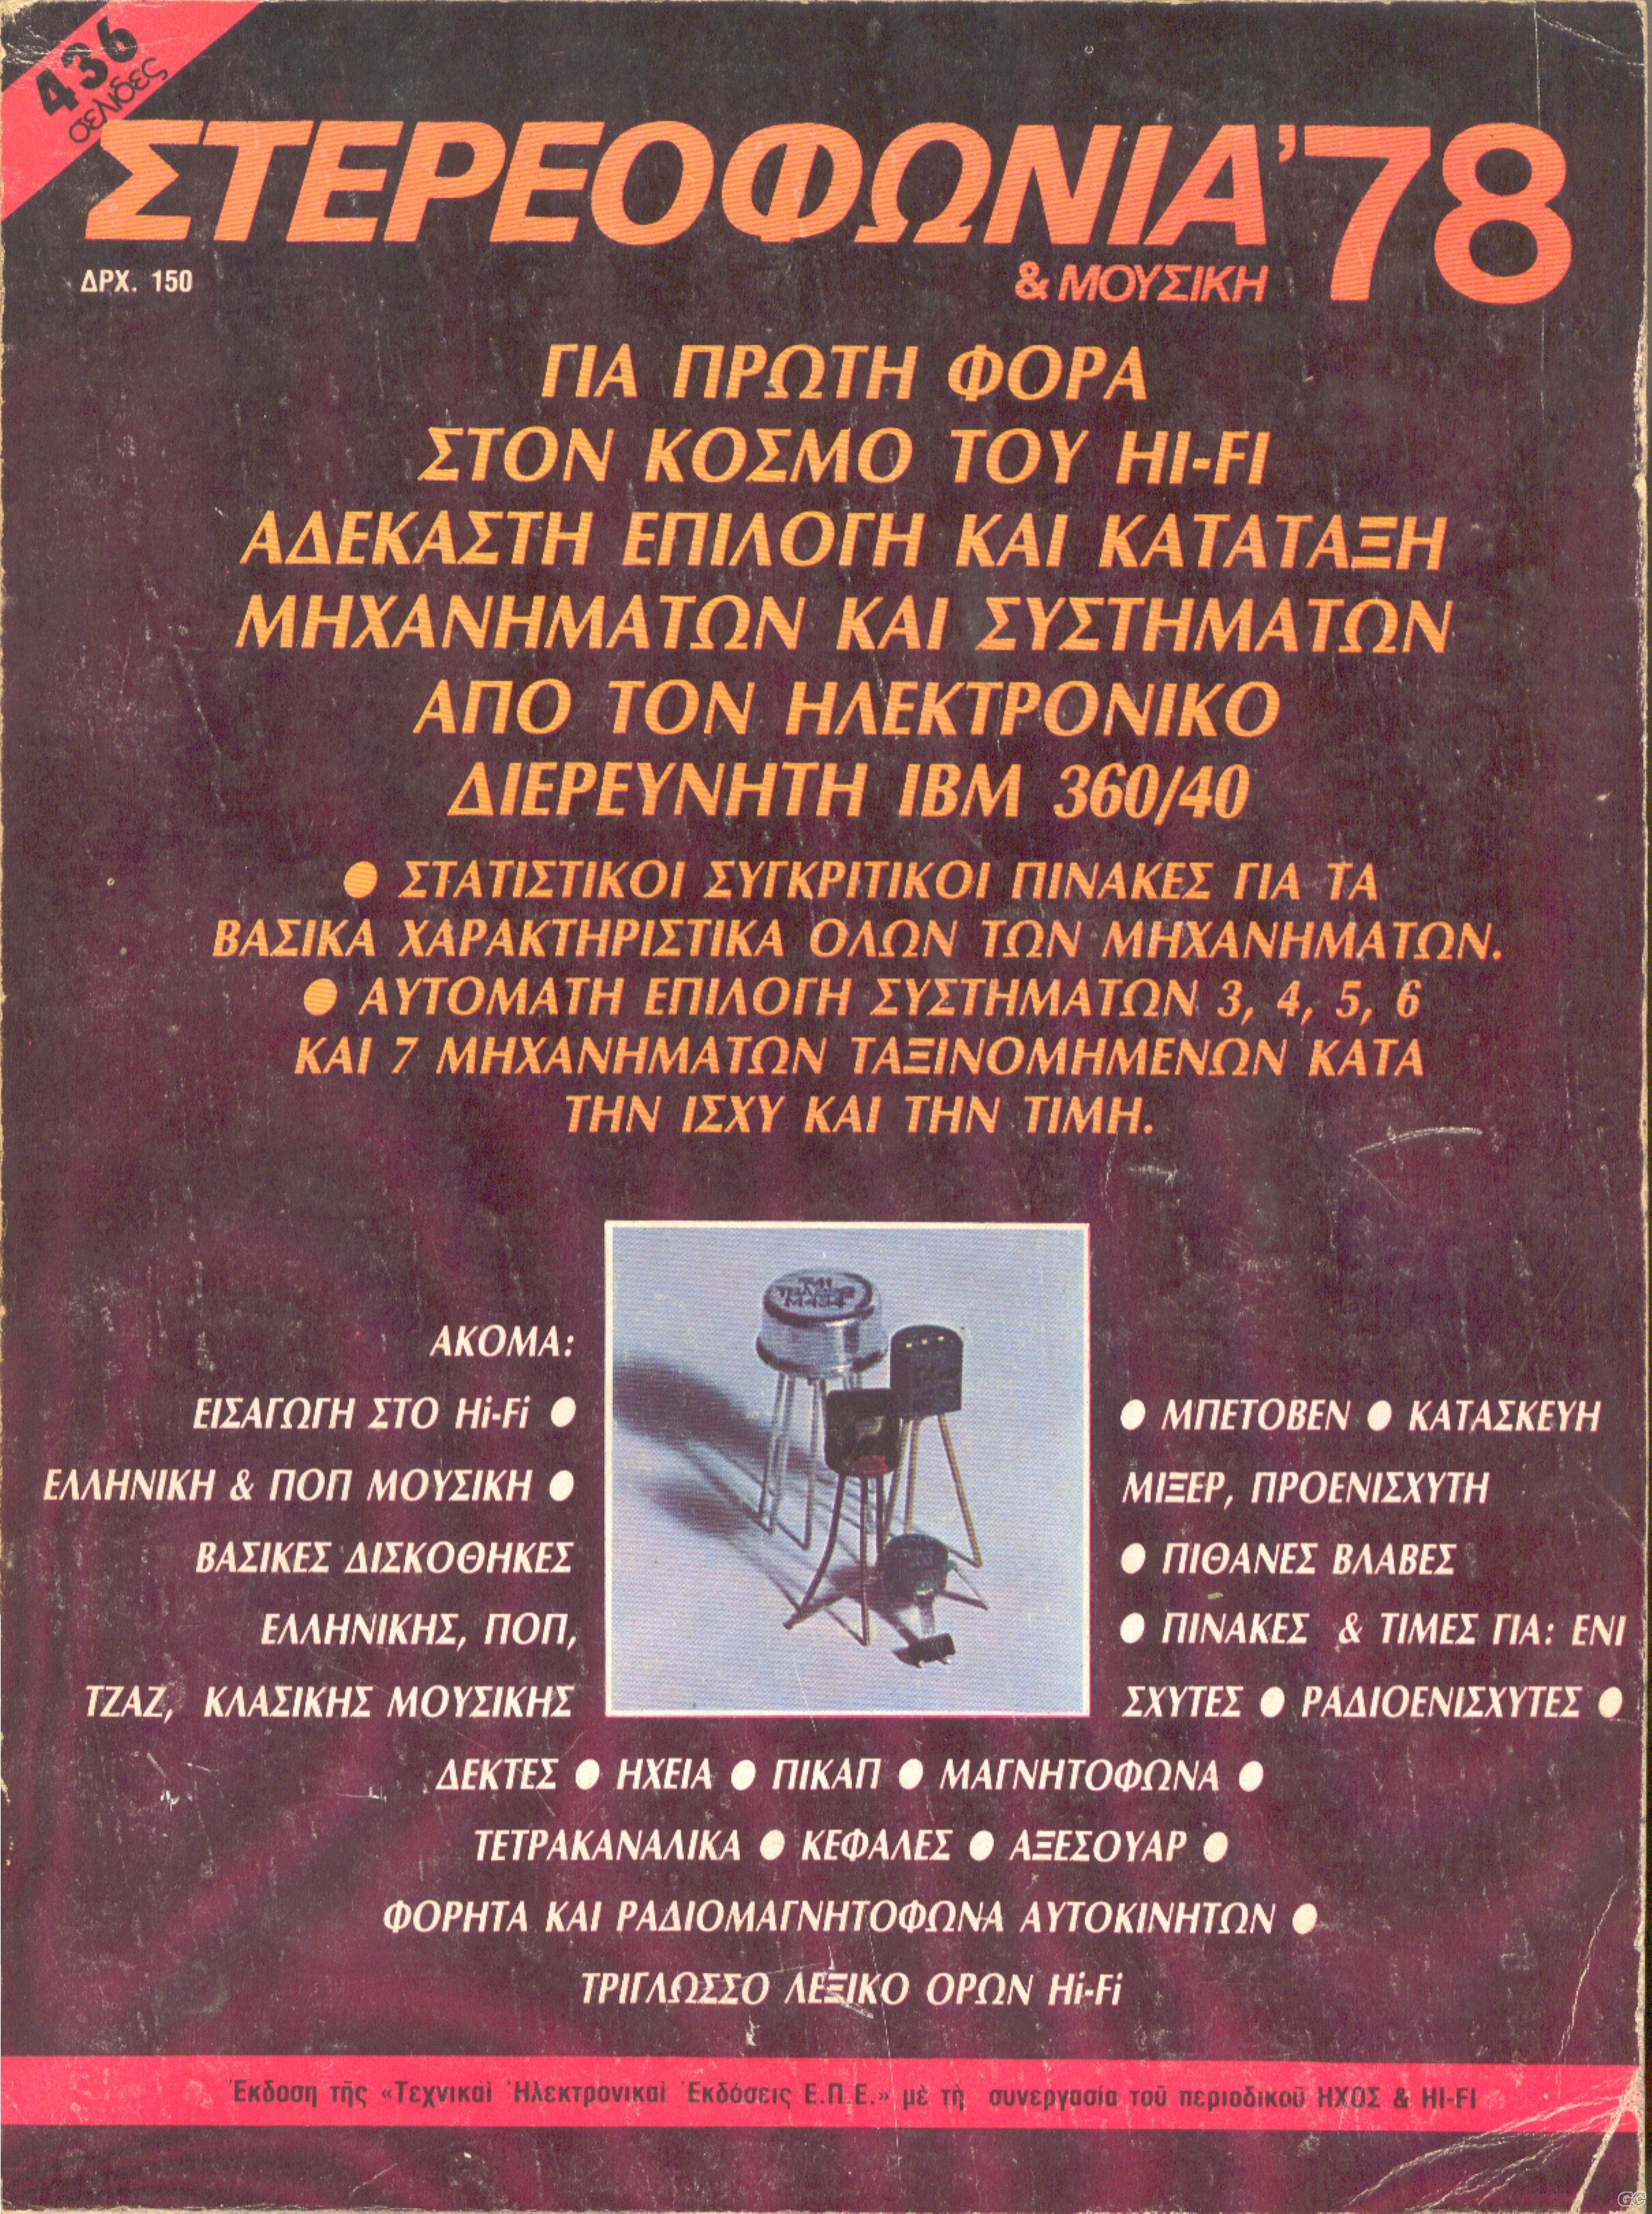 STEREOFONIAKAIMOYSIKH_1978.jpg